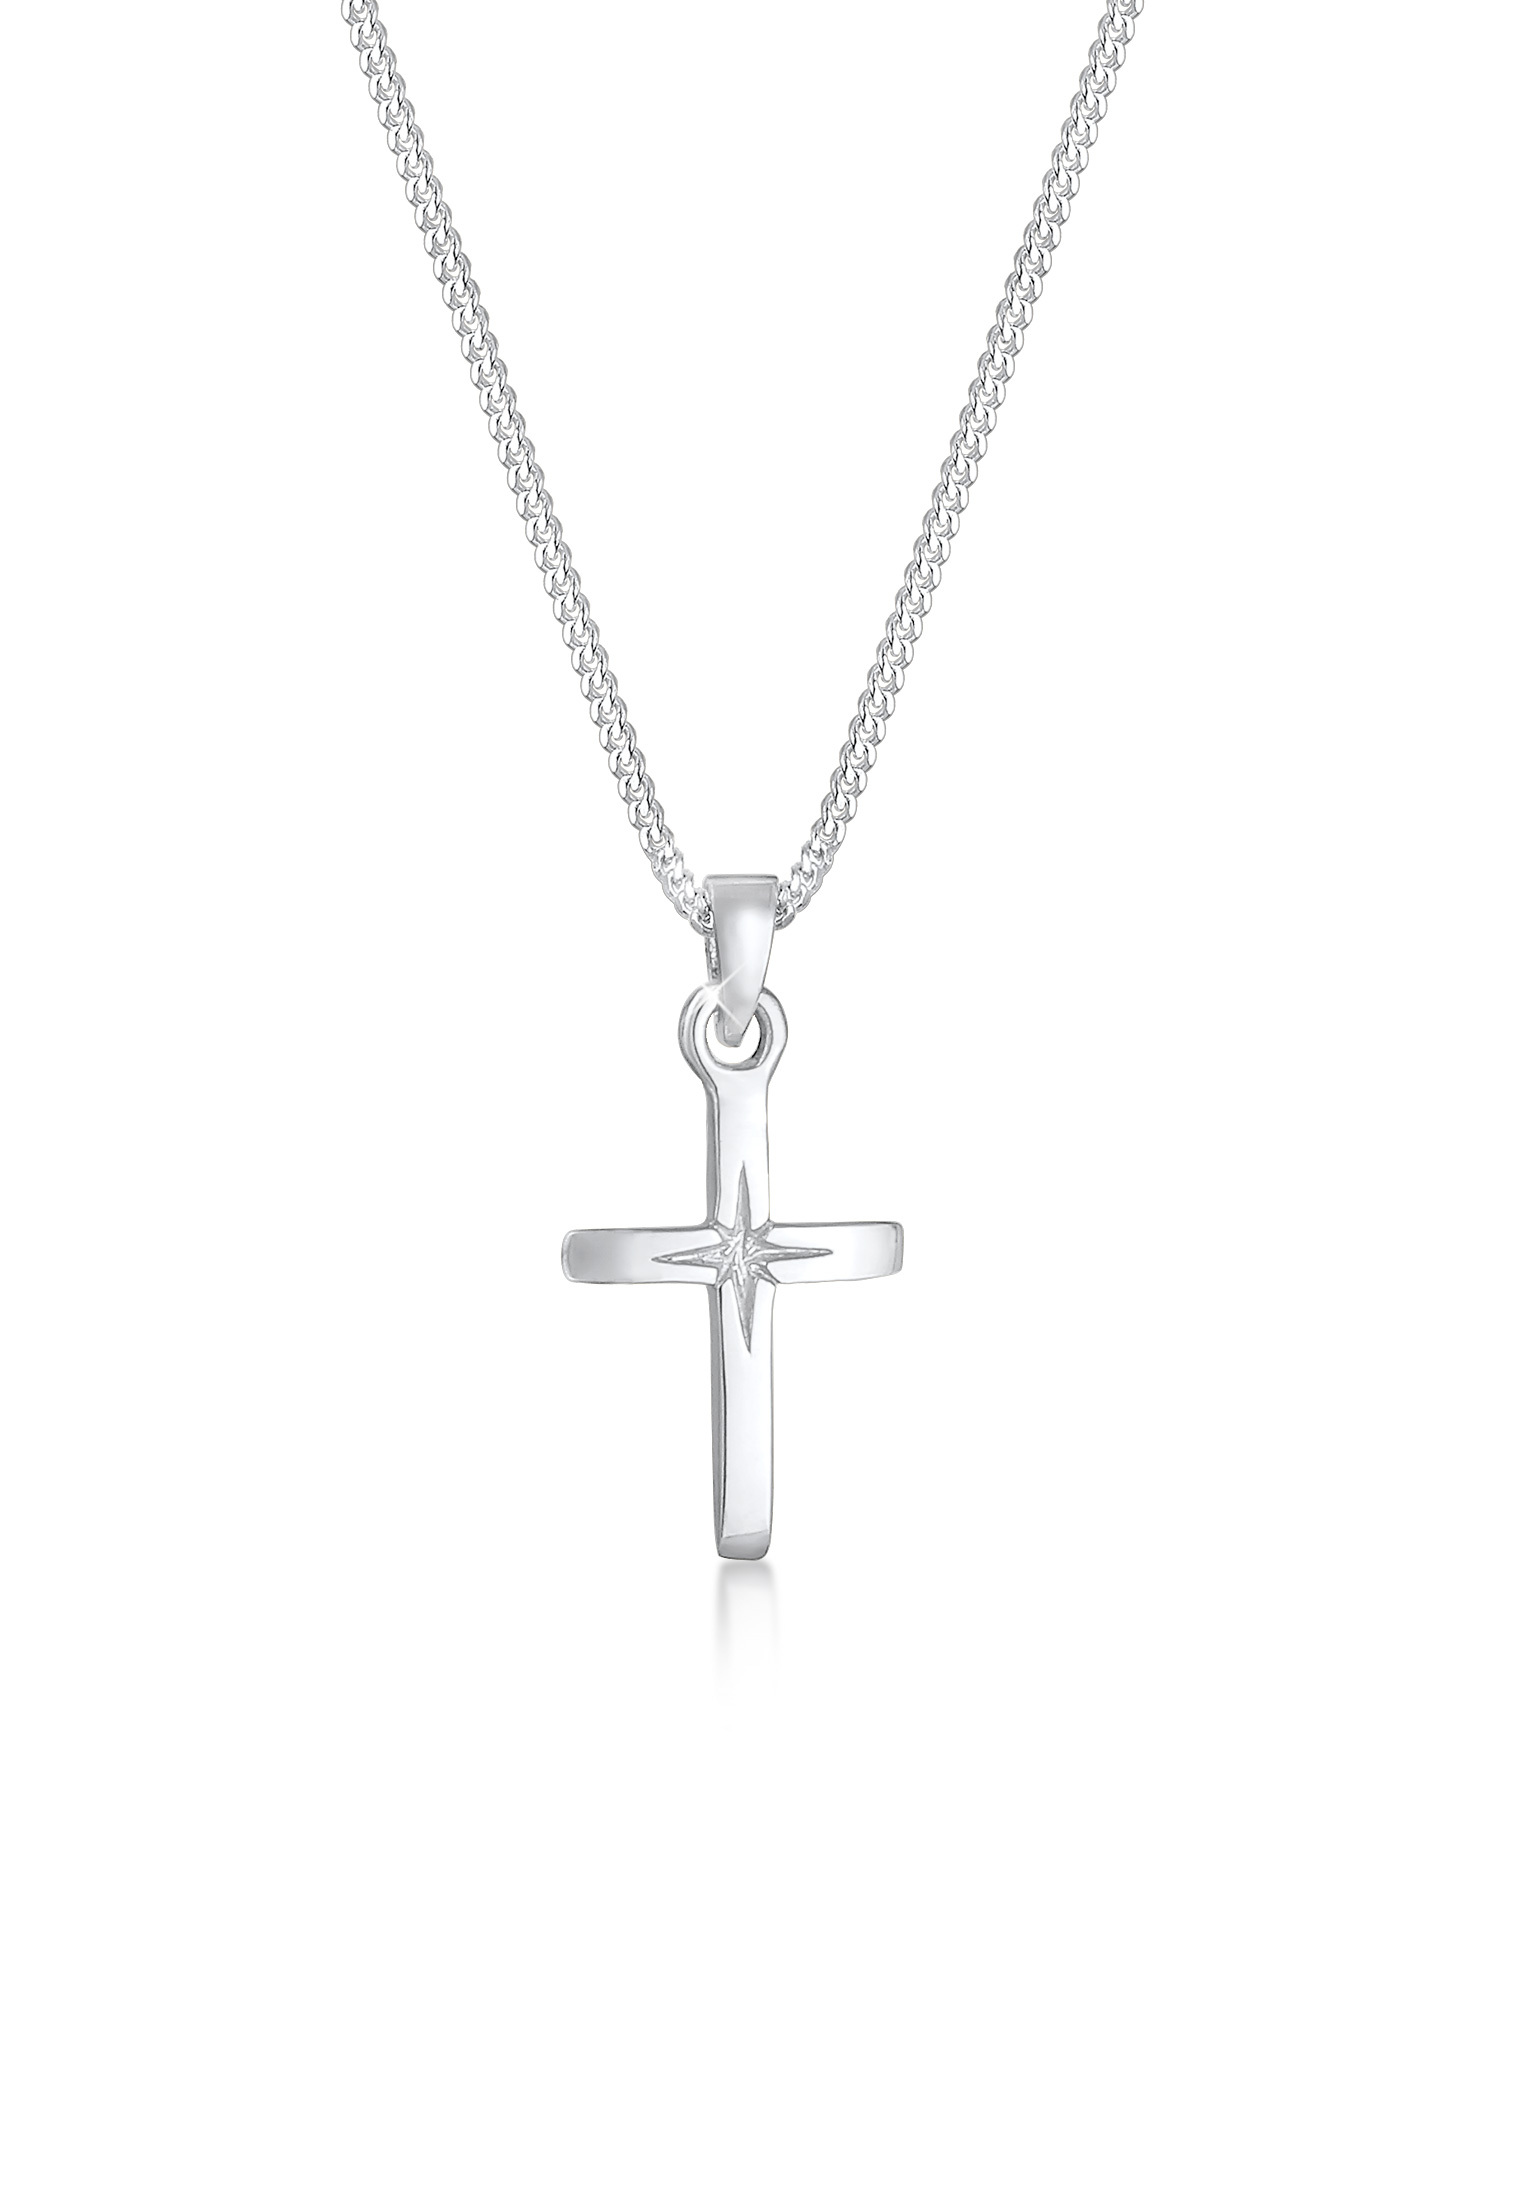 Halskette Kreuz | 925 Sterling Silber vergoldet